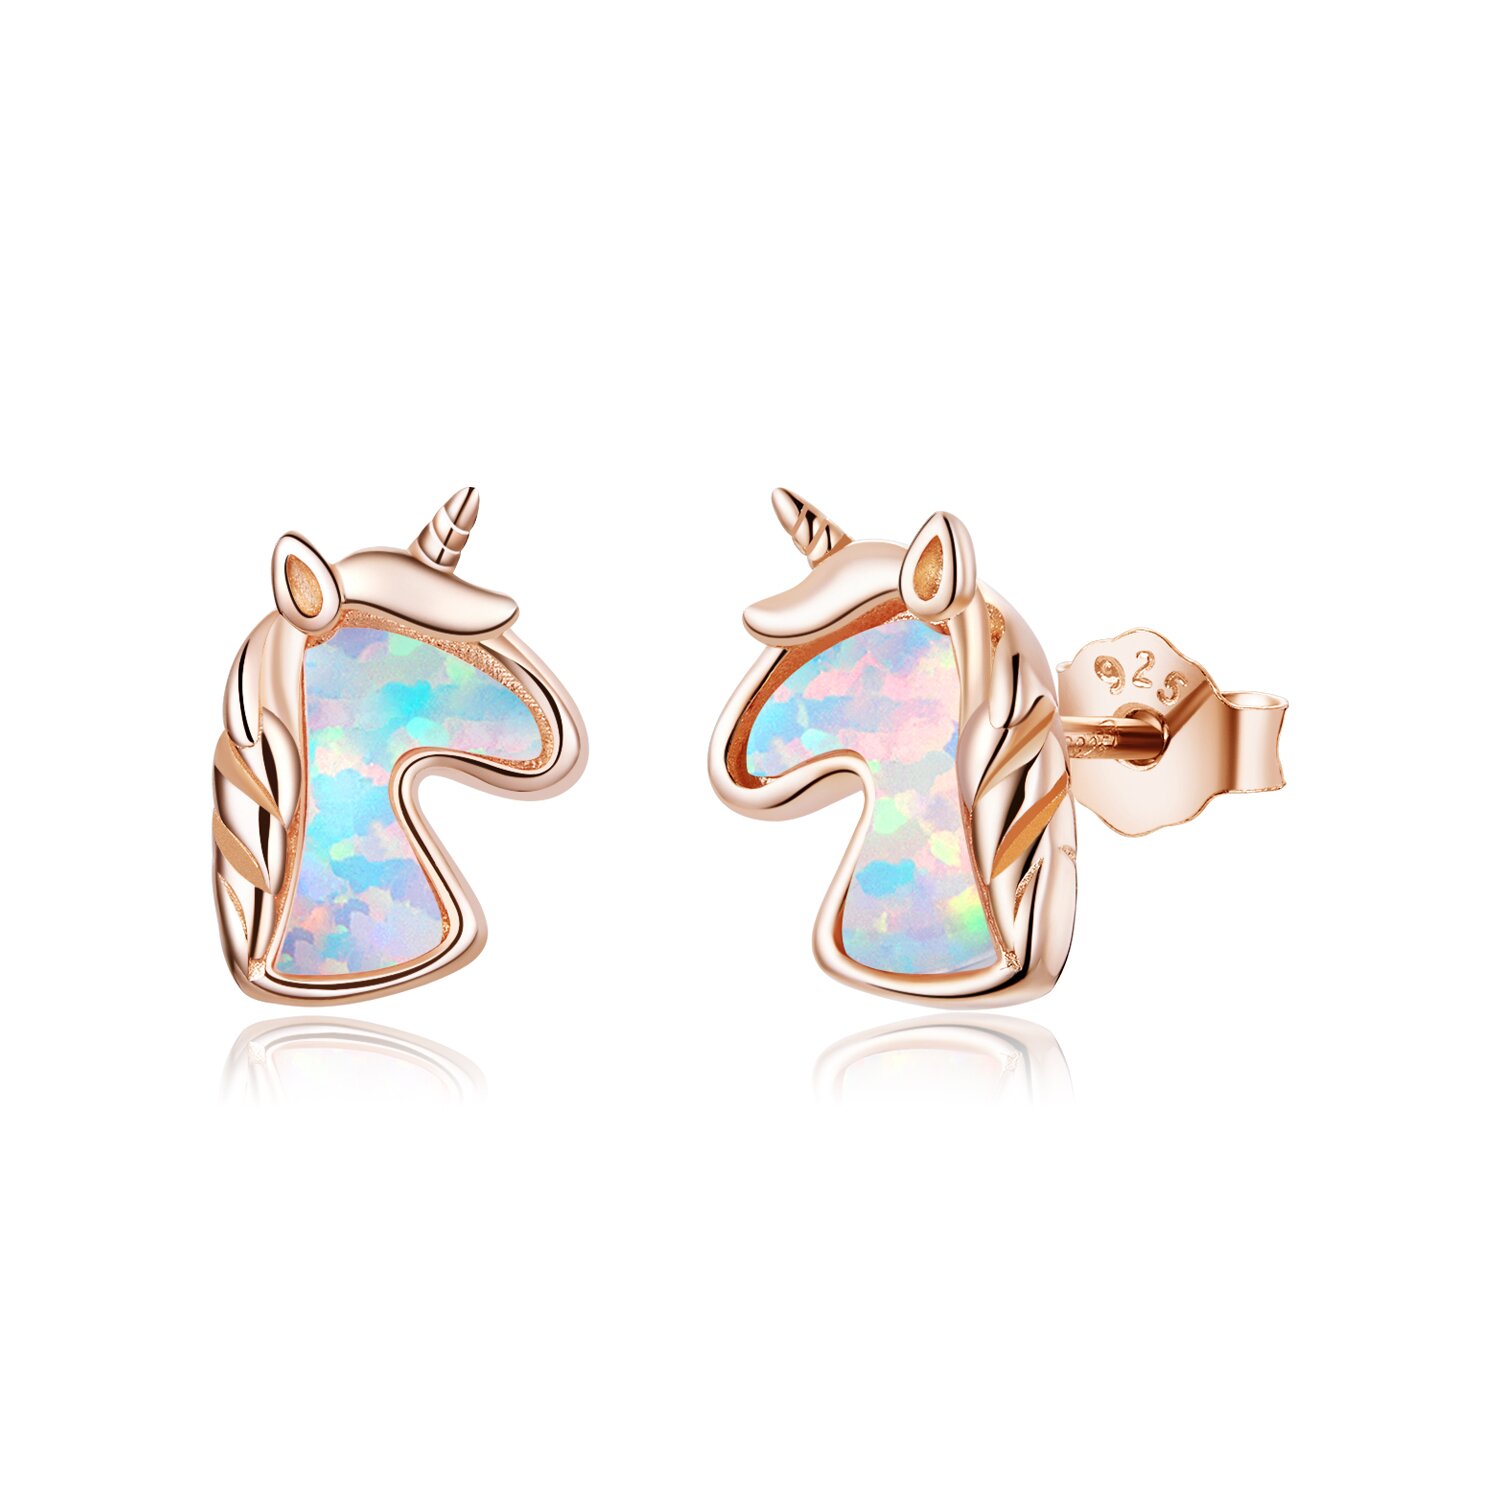 Cercei din argint Opal Rose Gold Unicorns la pret fara cncurenta